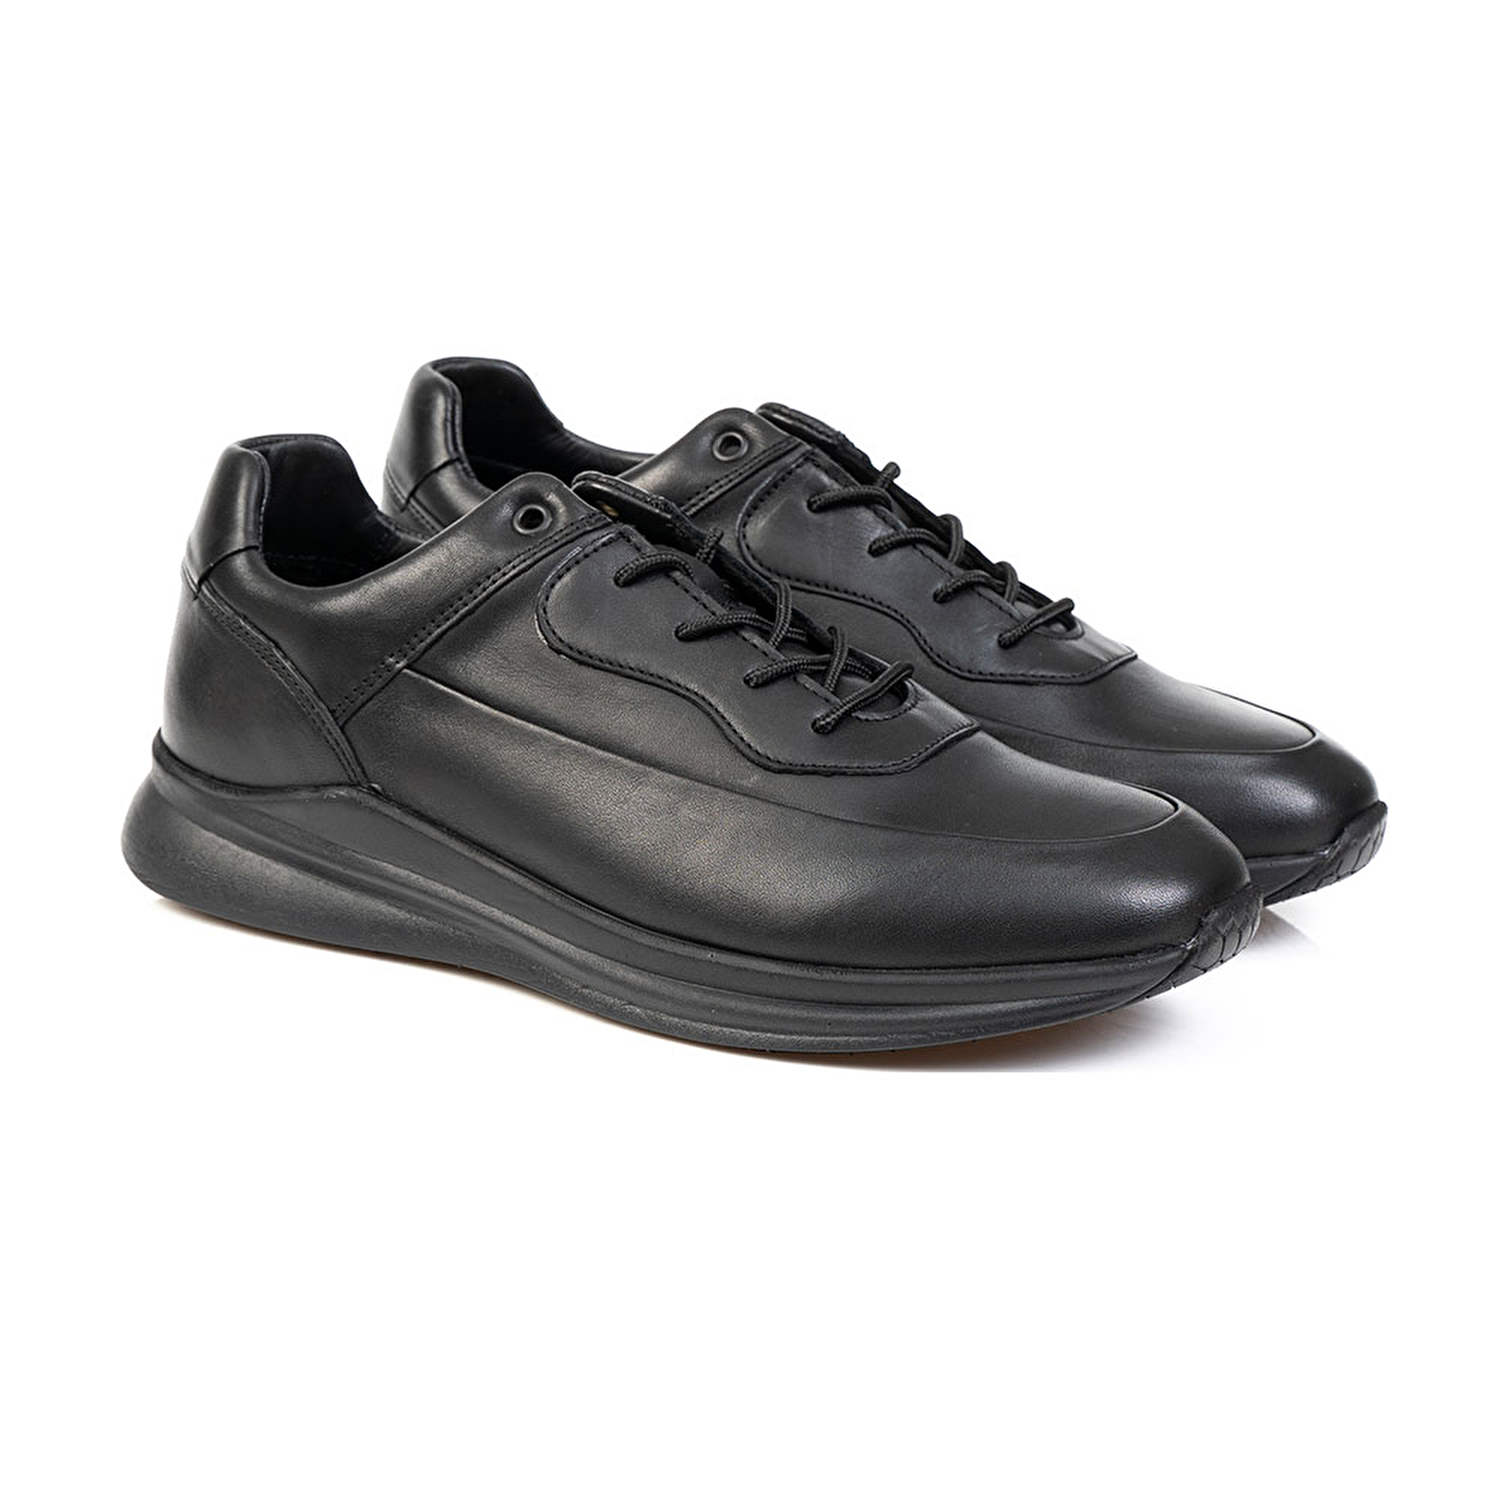 Erkek Ayakkabı Siyah 14511-2